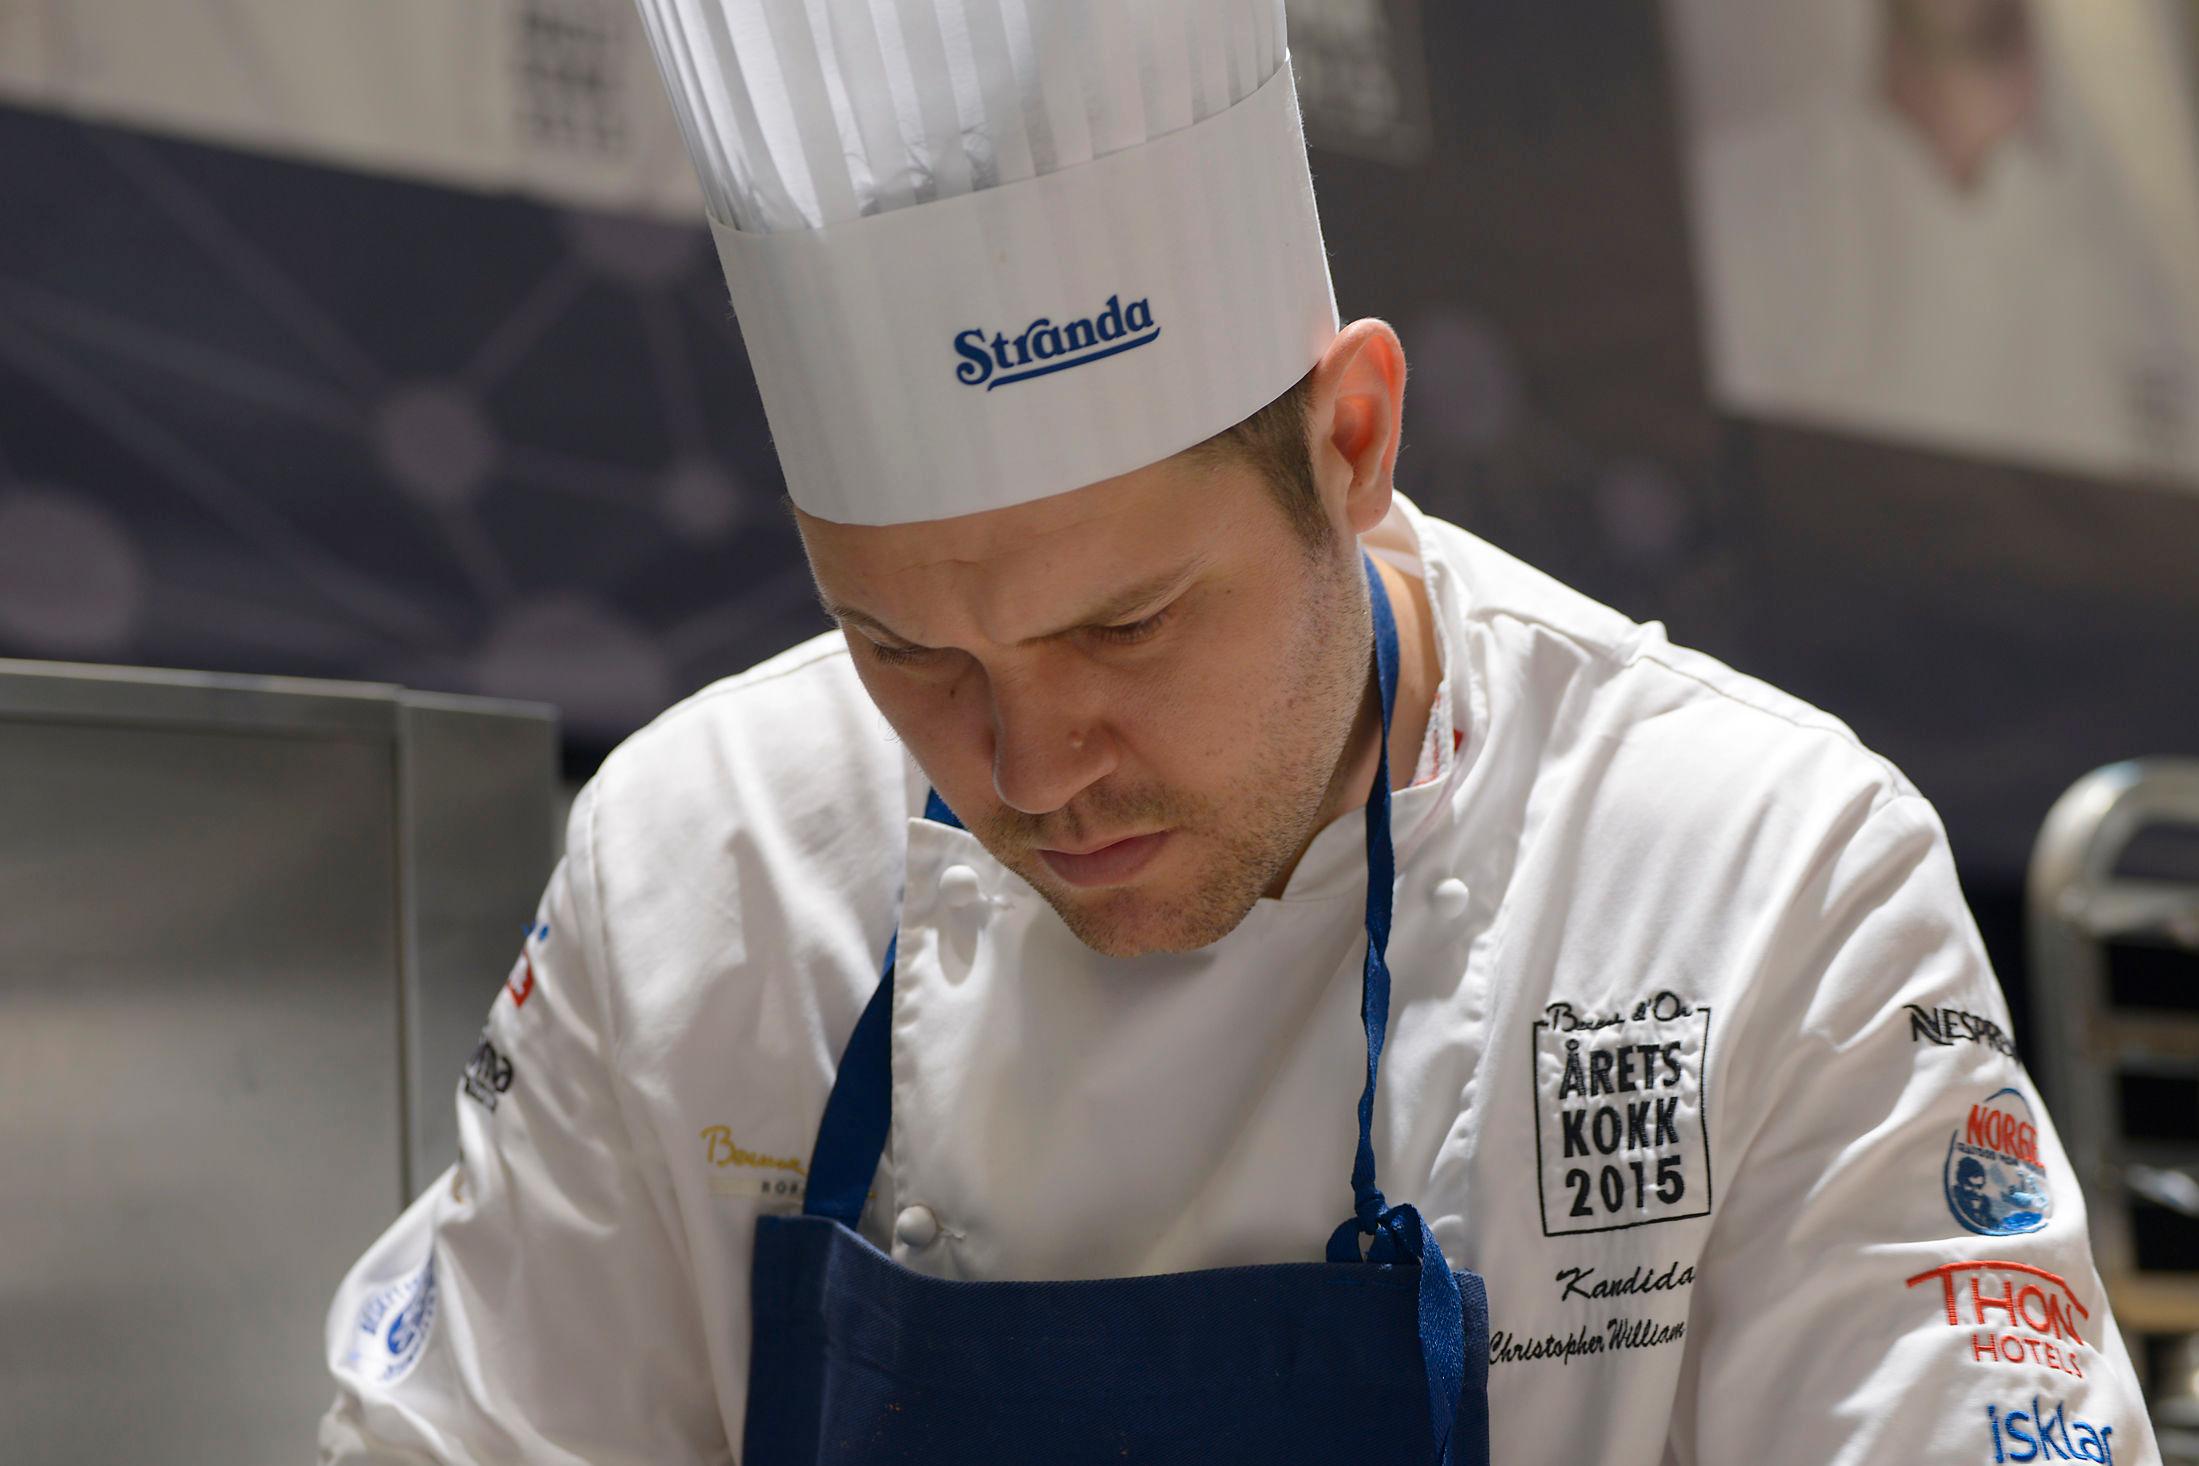 NORGES BESTE: Christopher W. Davidesen ble kåret til Norges beste kokk i 2015. Foto: Impuls.